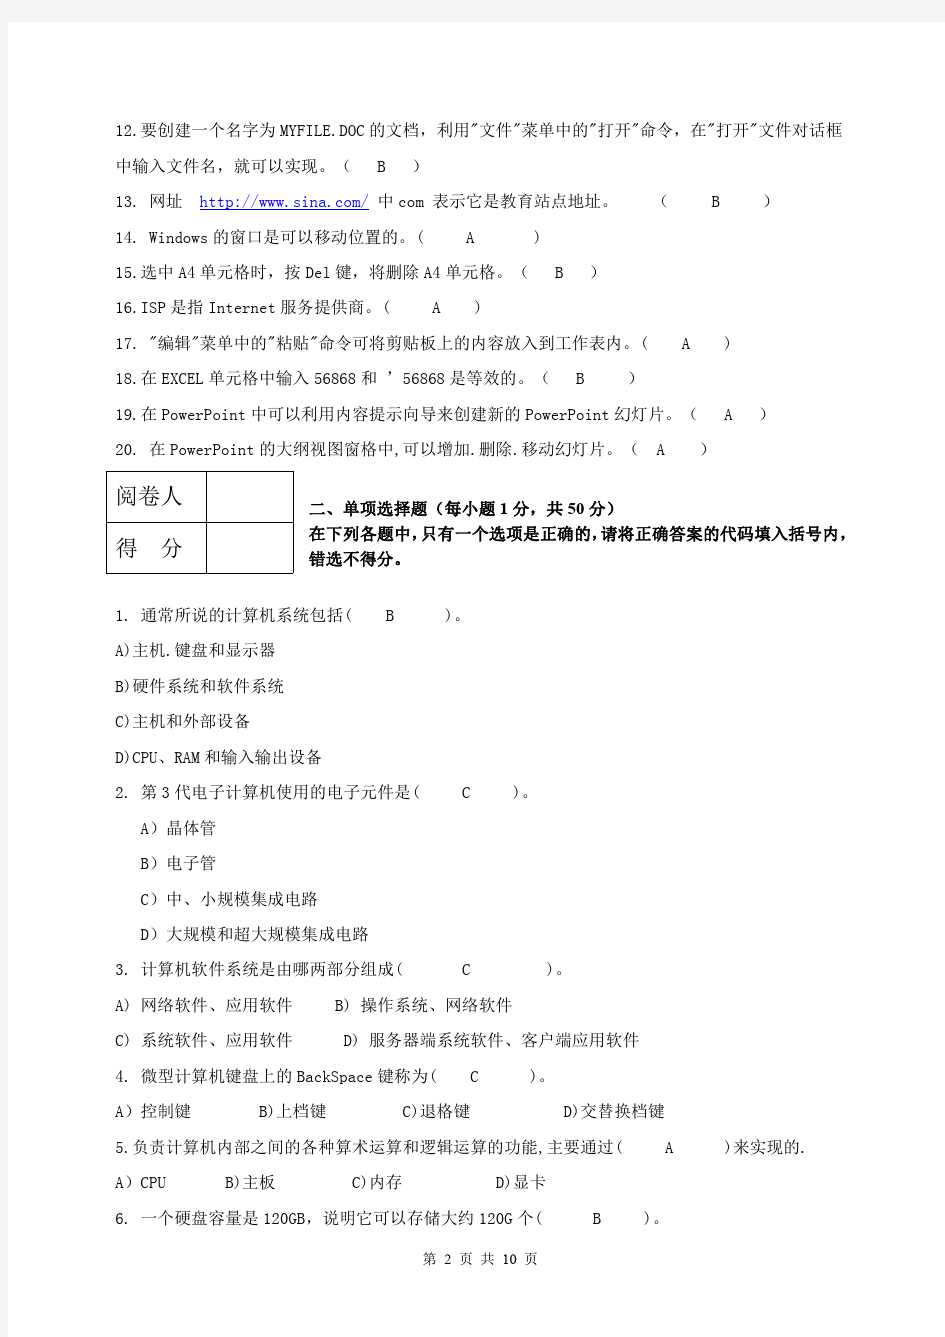 成都中医药大学 2016年春季学期期末考试计算机基础试卷-成教(答案)